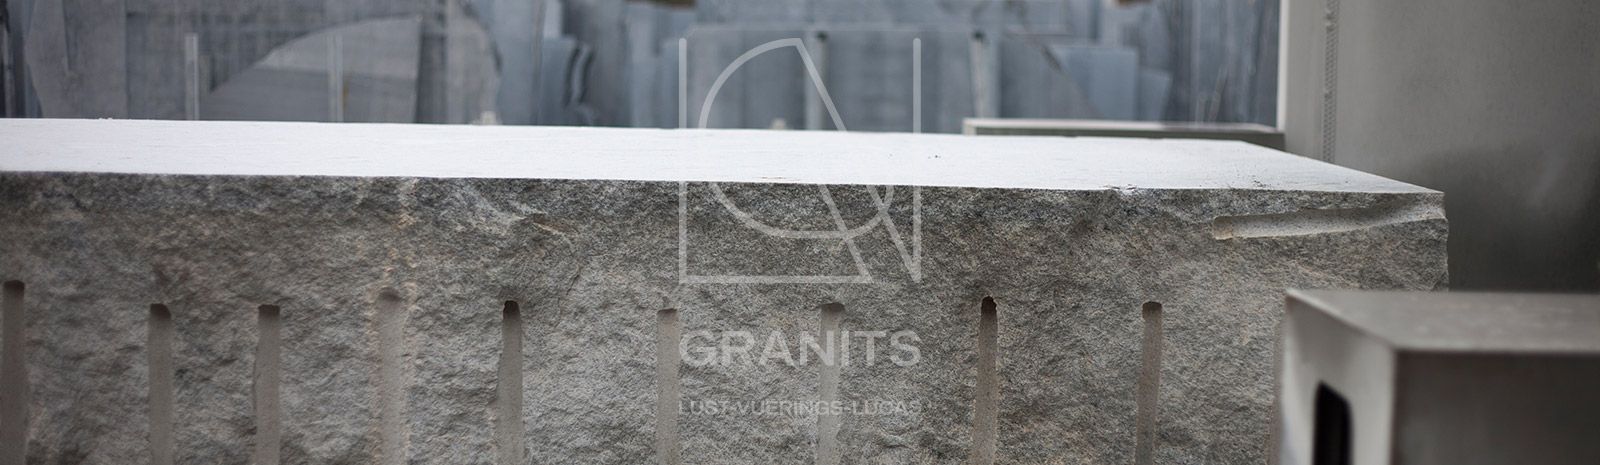 Granits Lust-Vuerings-Lucas - Granit Lust-Vuerings - Graniet